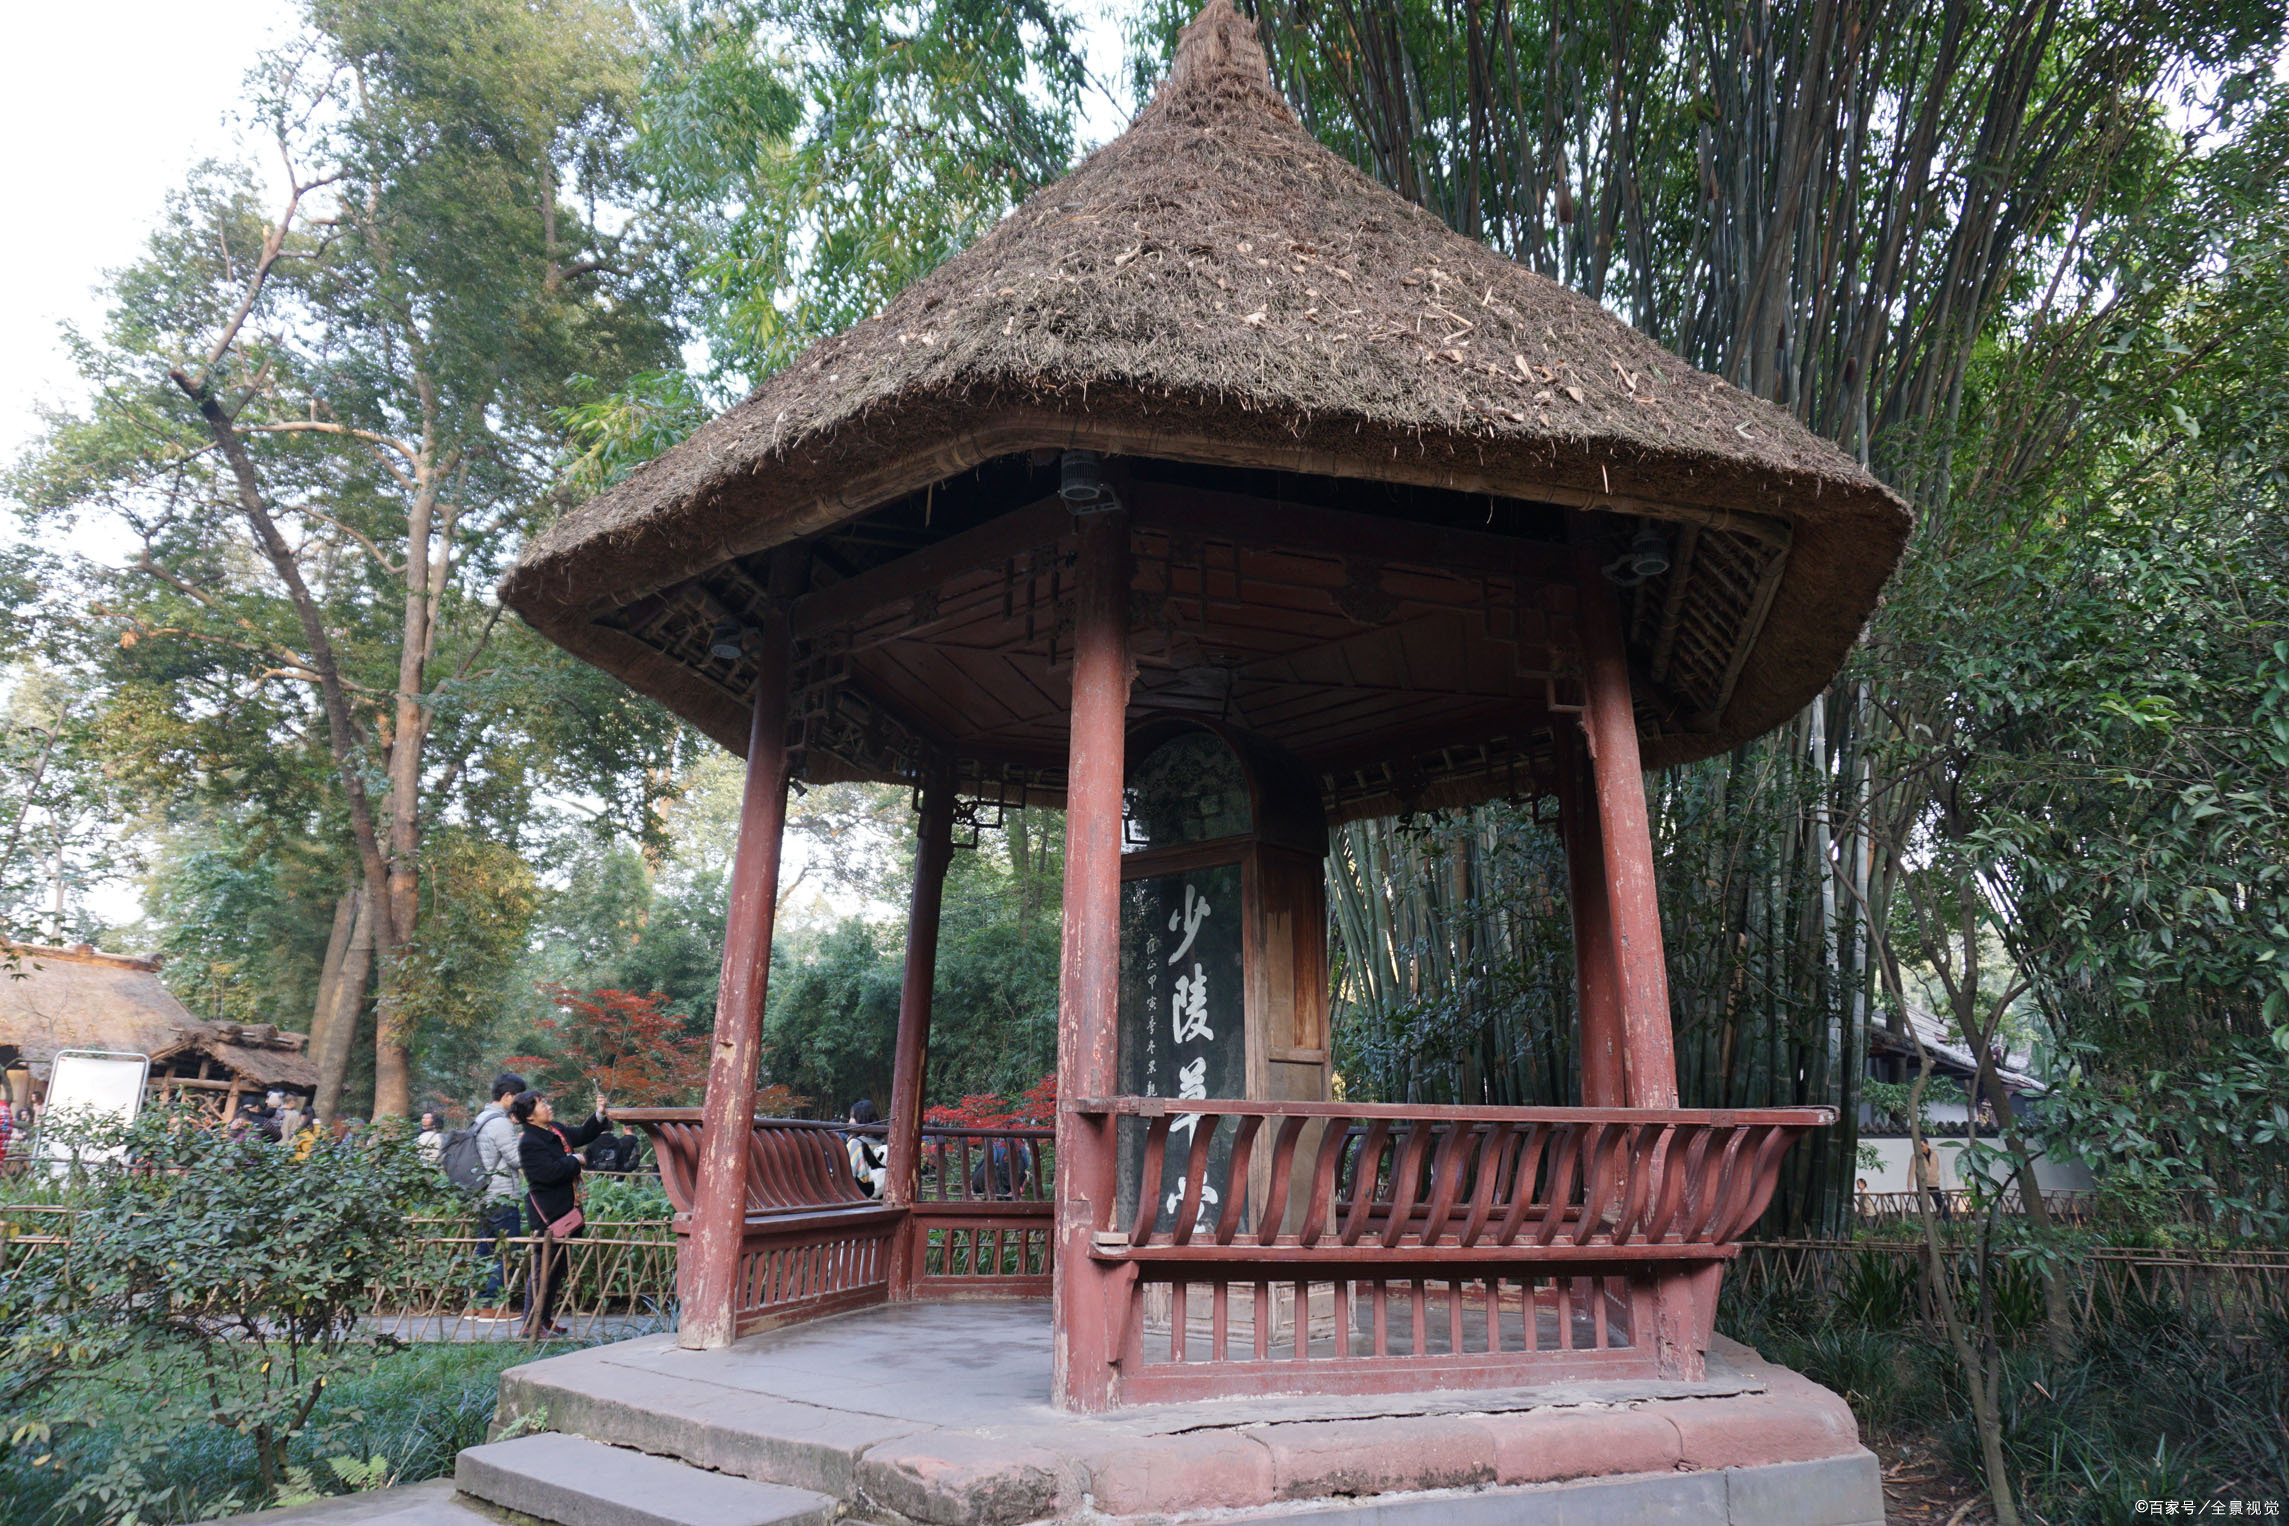 少陵碑亭,是杜甫草堂最具代表性的景点之一,人们常常将其作为茅屋的